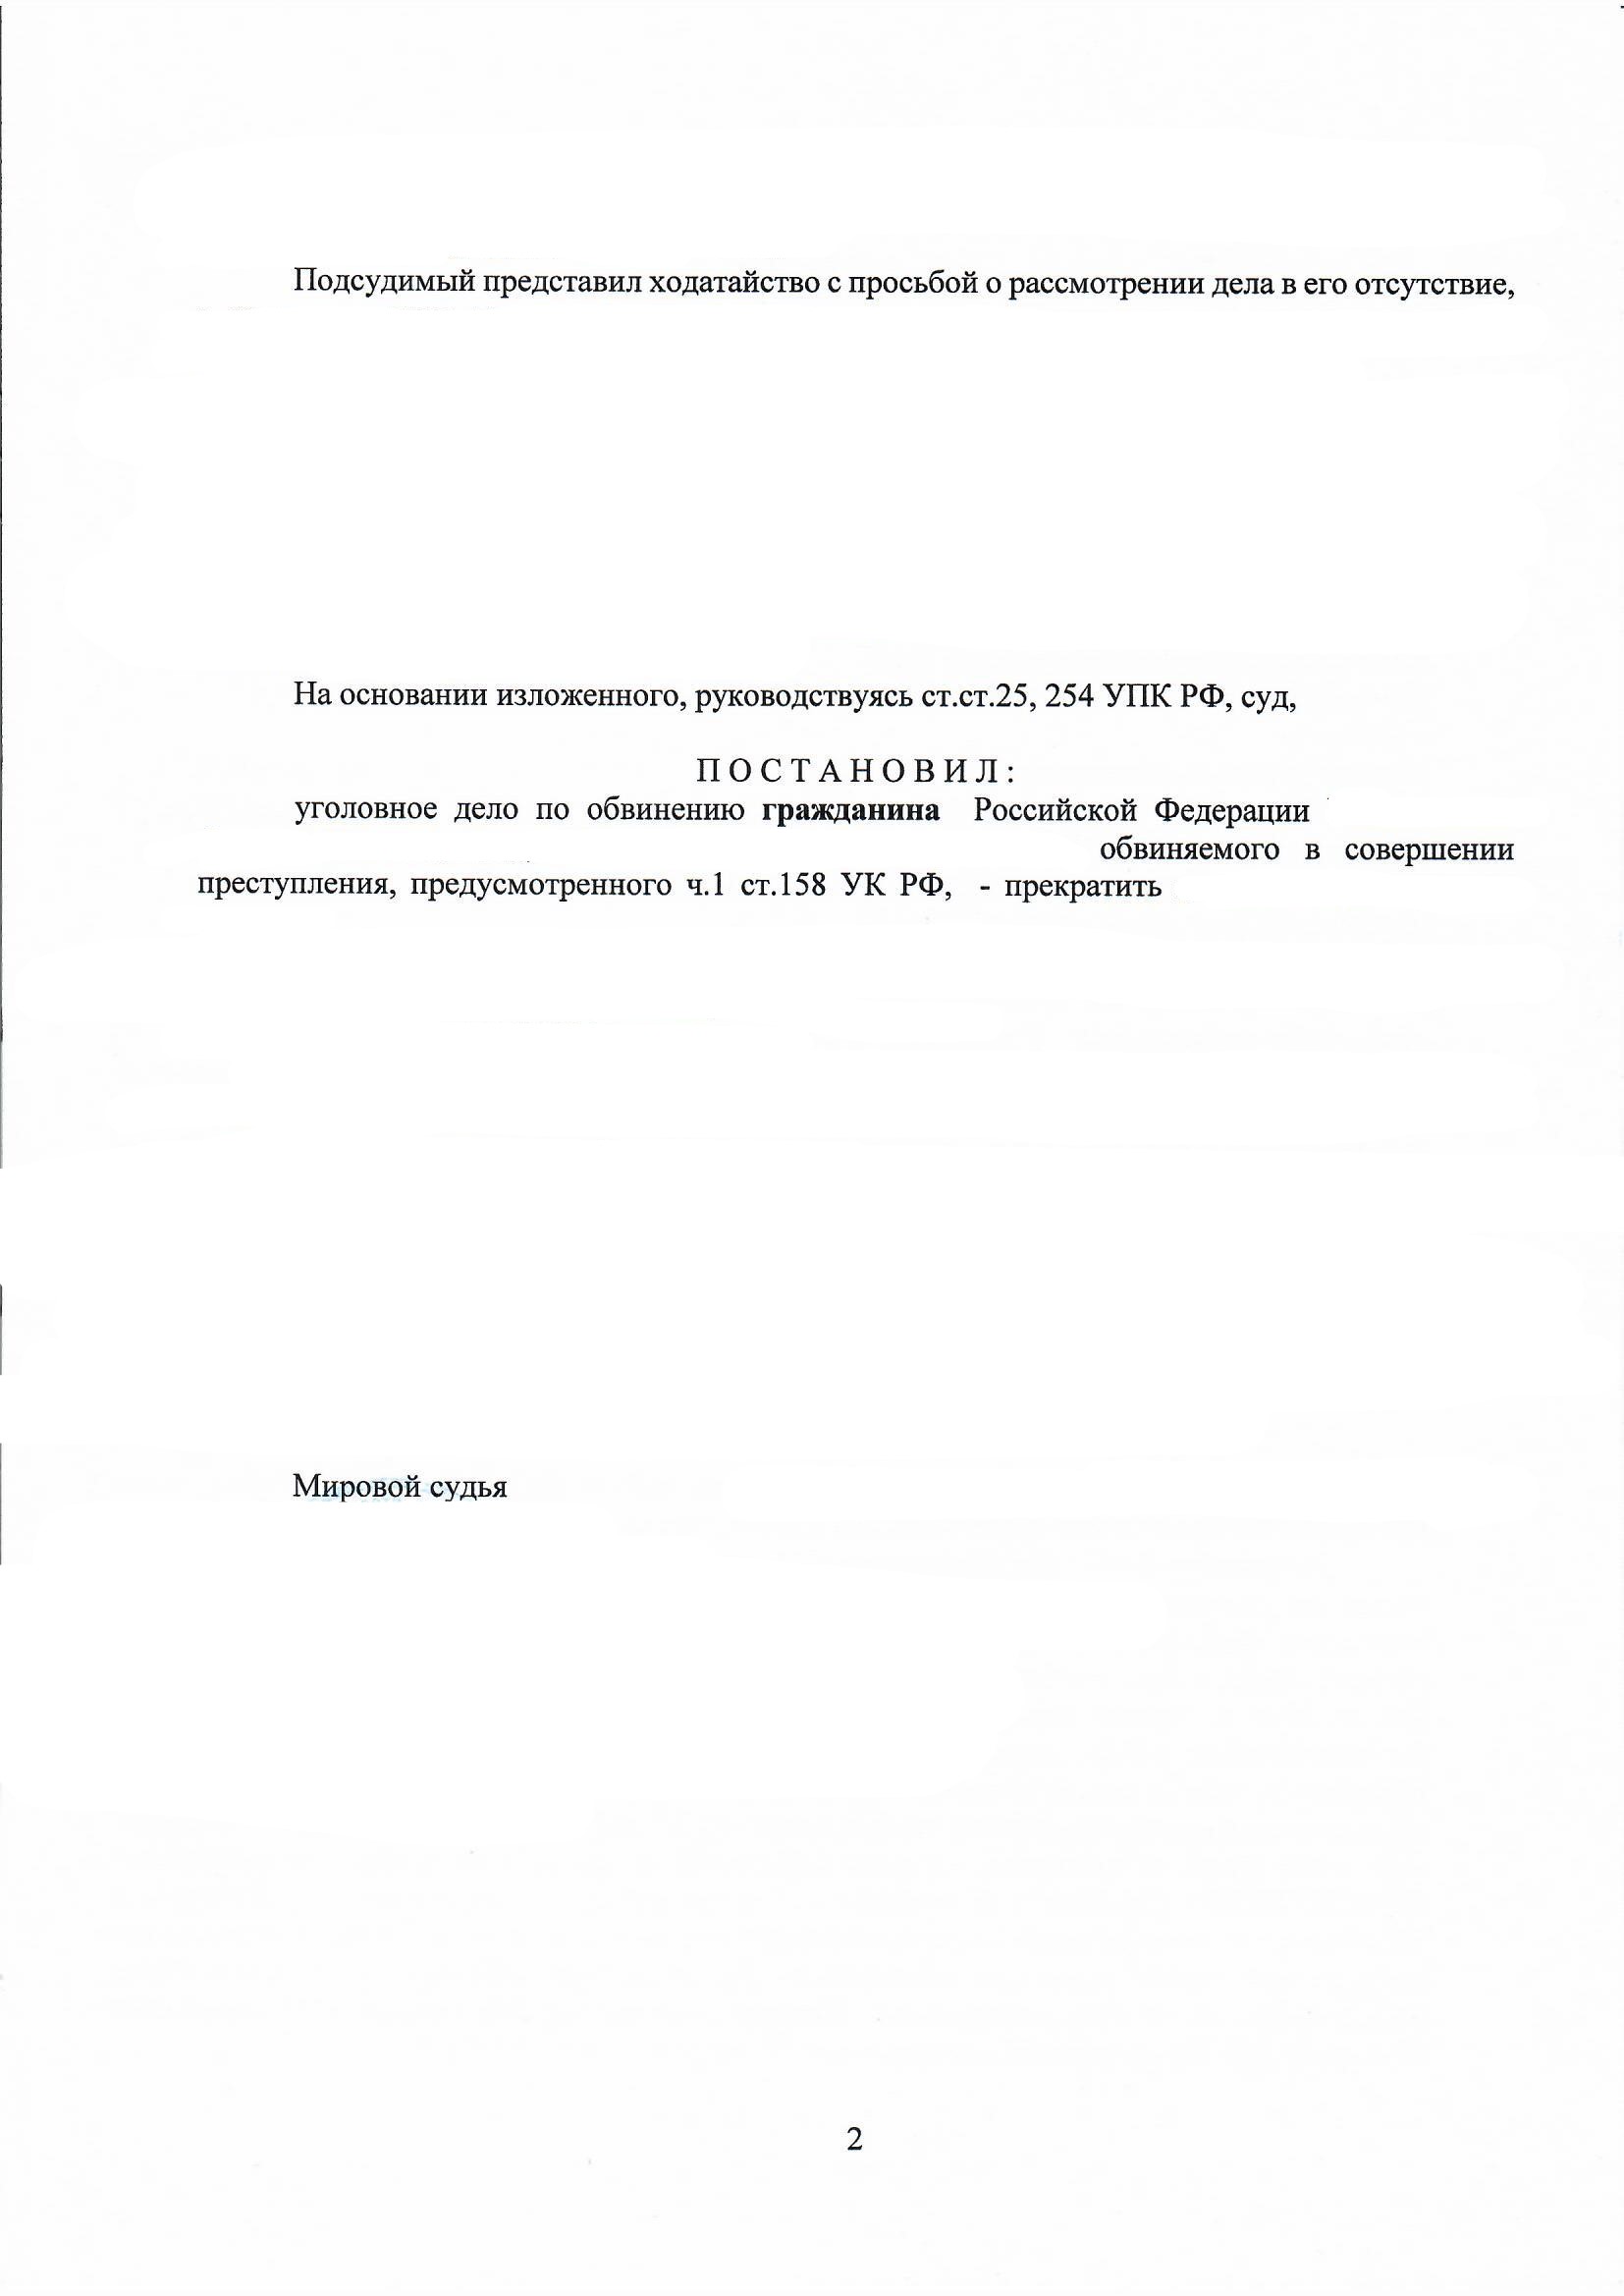 Практика адвоката по ч. 1 ст. 158 УК РФ - прекращение уголовного дела без присутствия обвиняемого в суде